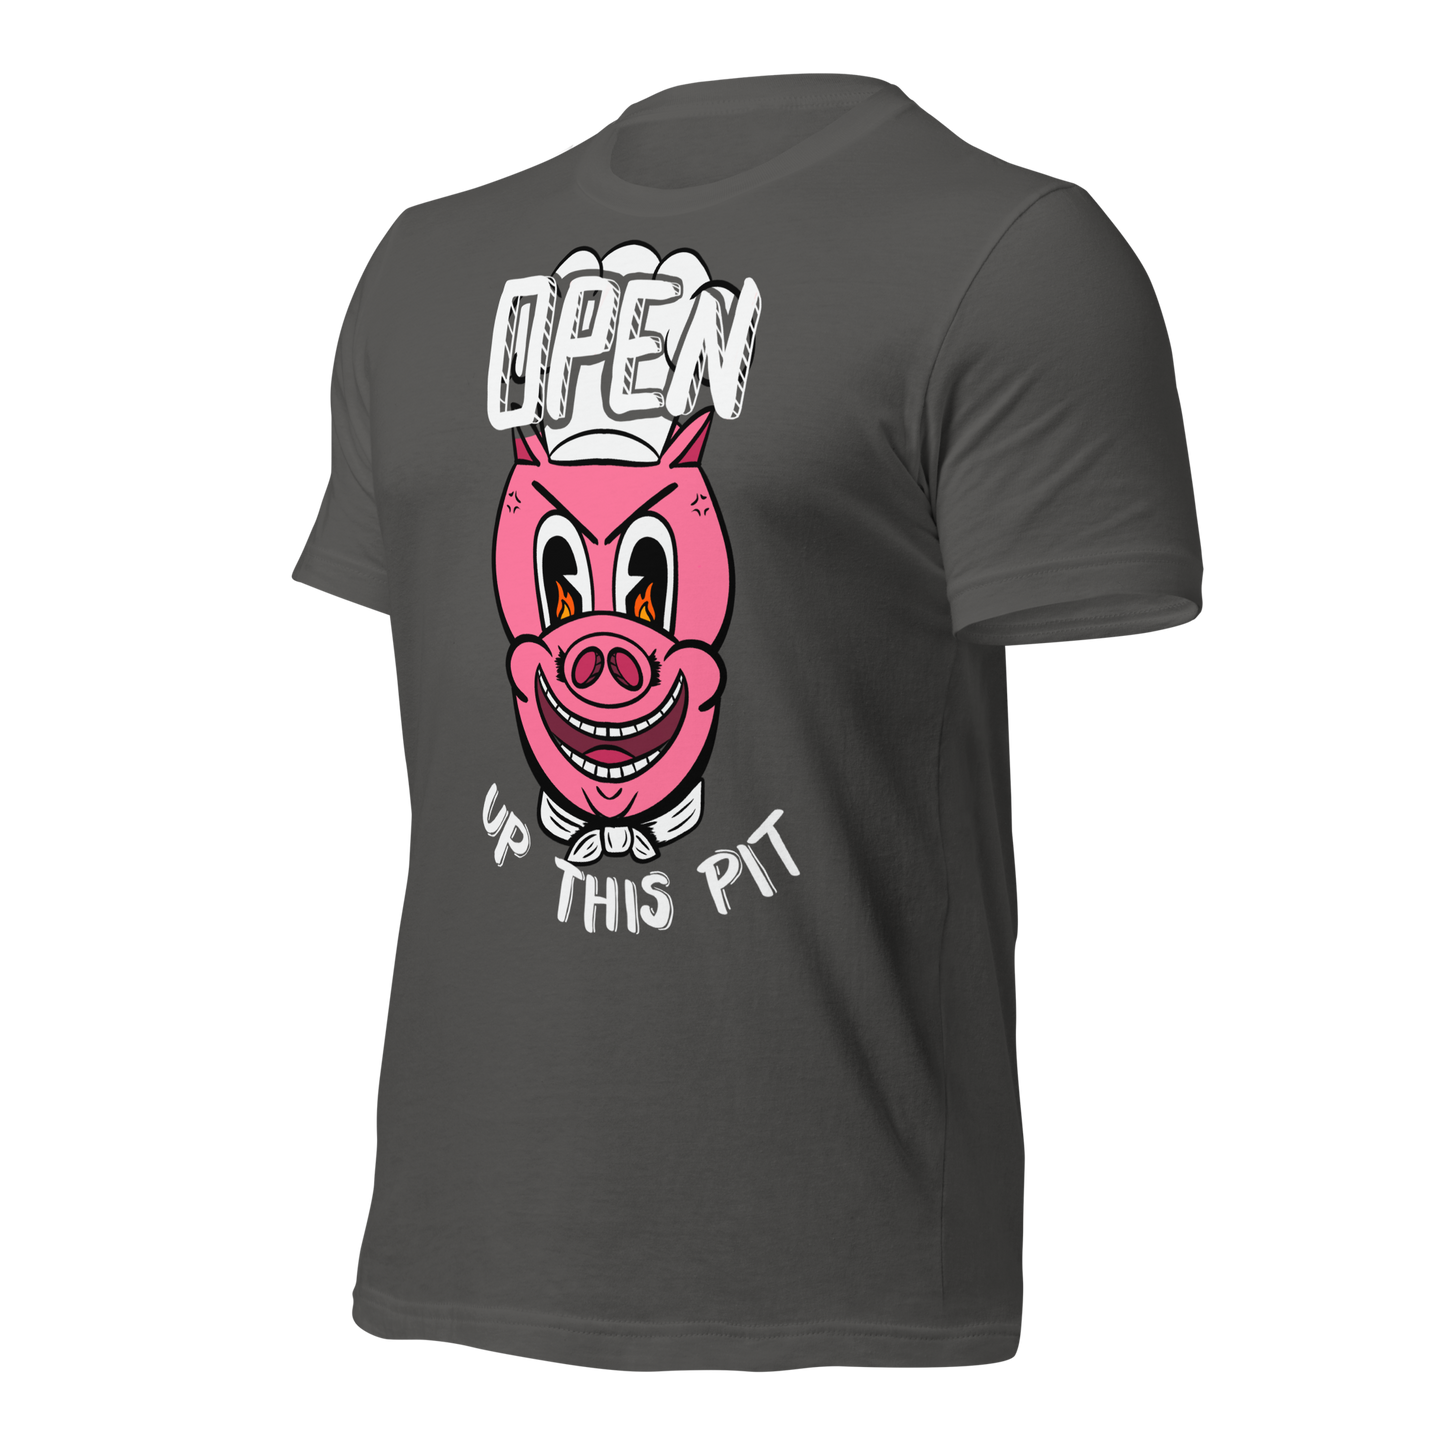 Total Death Fest "Open Up This Pit" - Unisex t-shirt